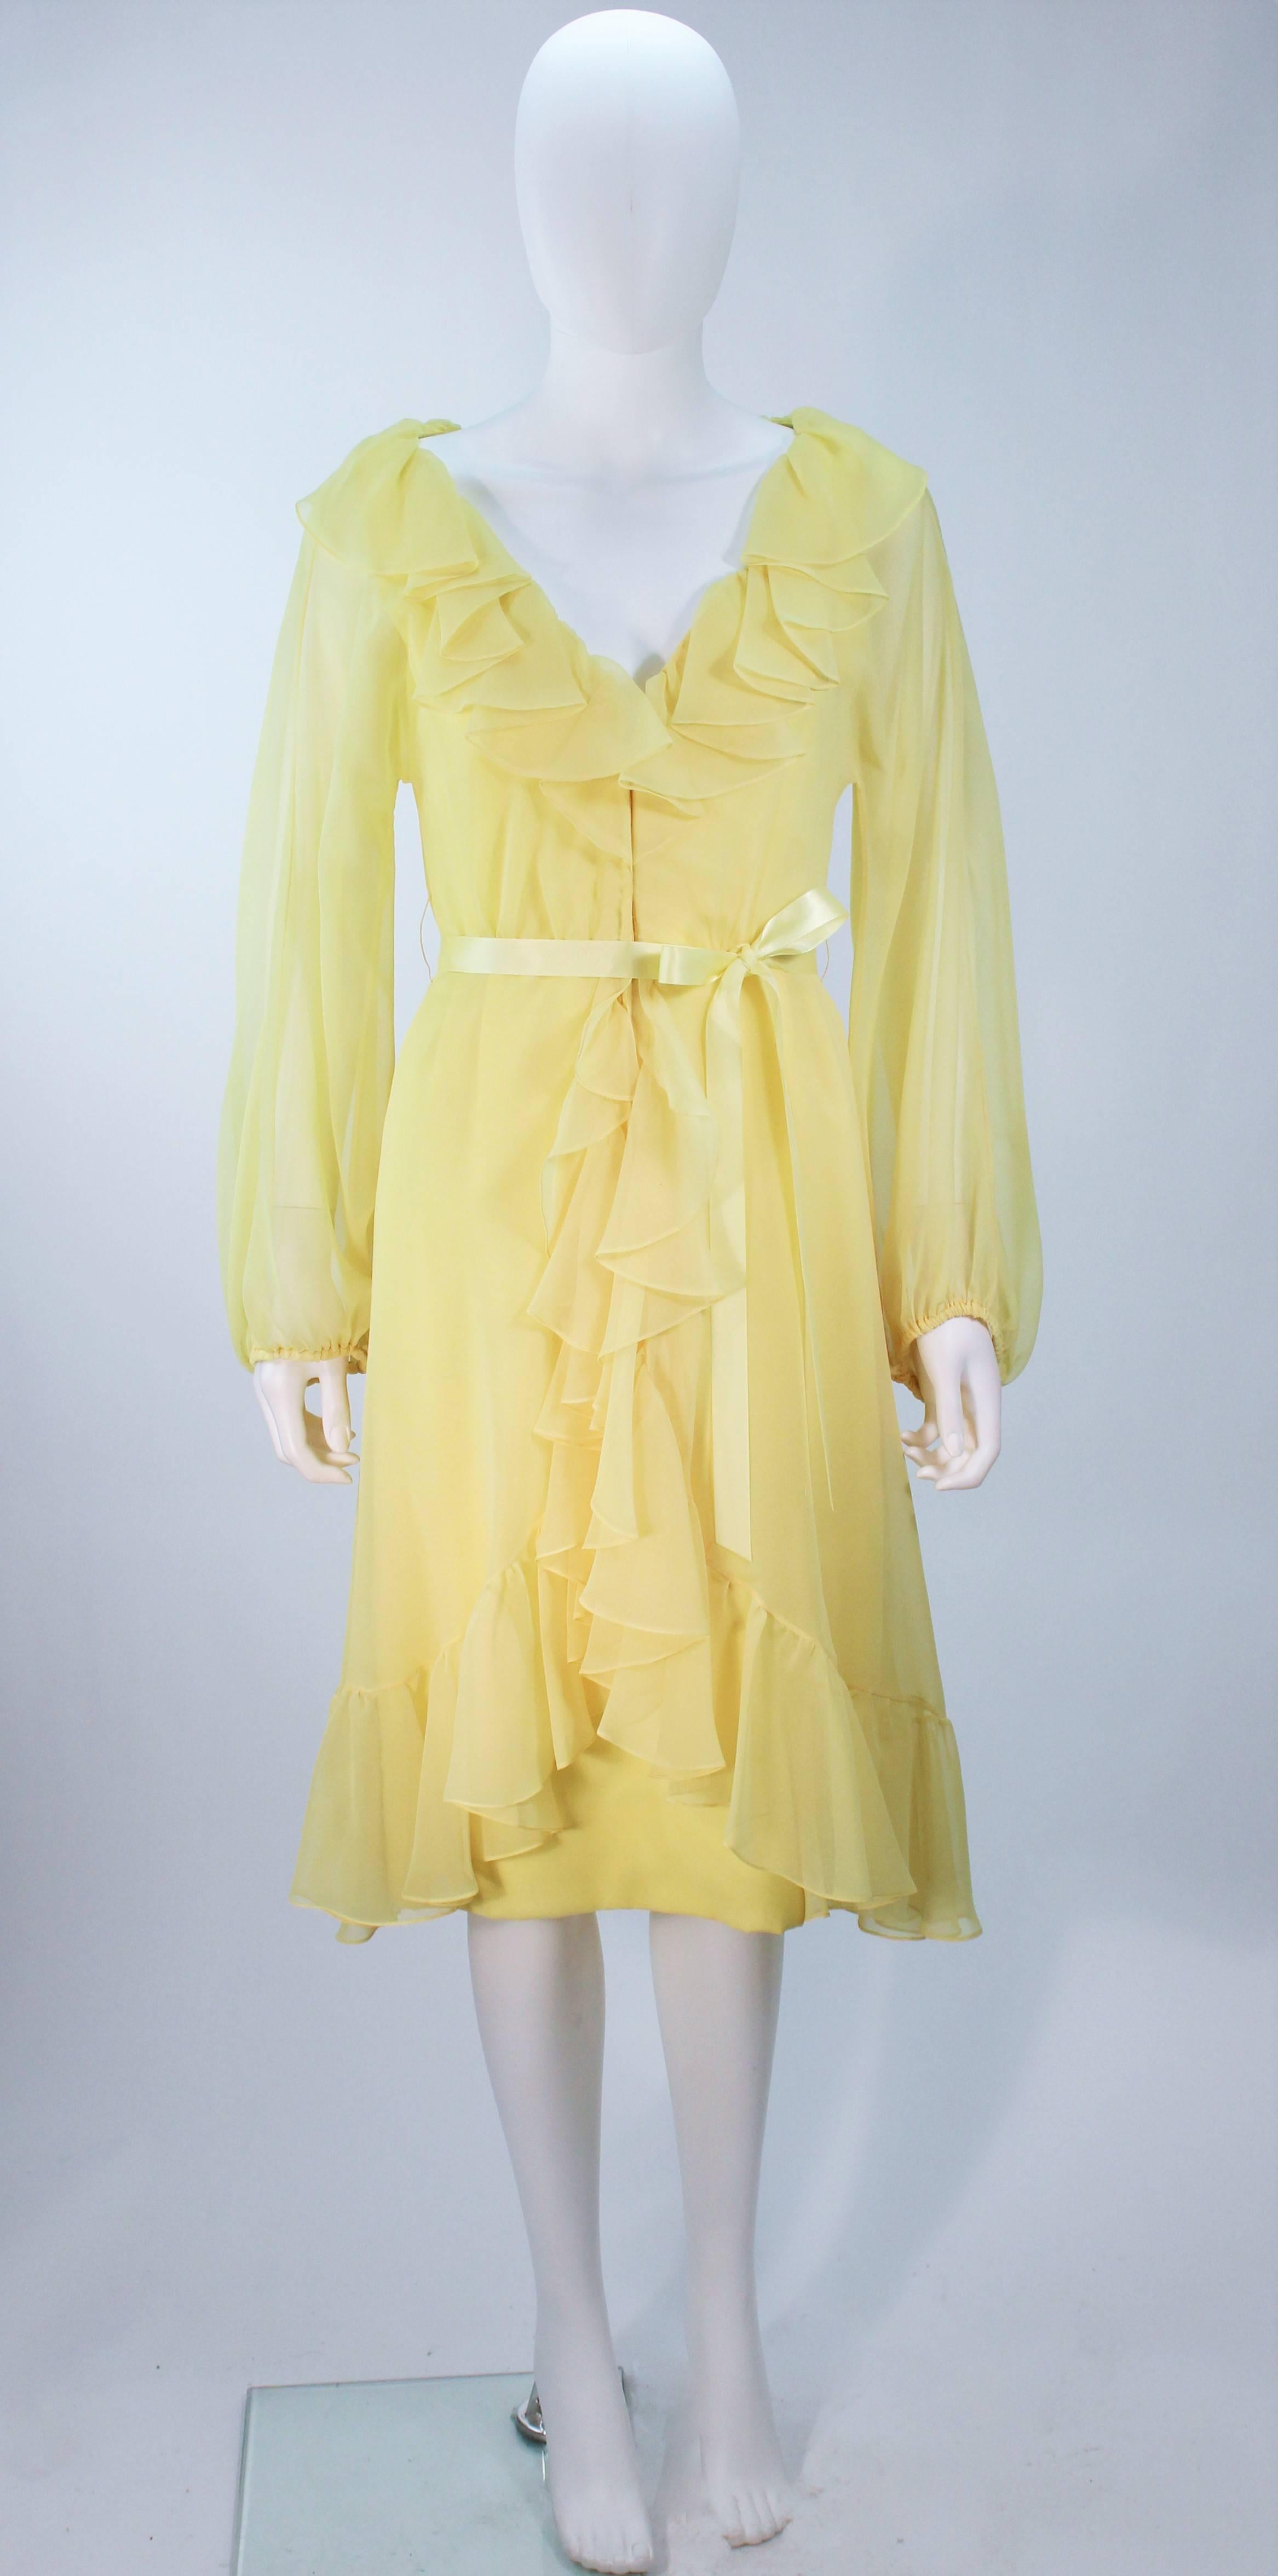  Dieses Kleid von Travilla besteht aus gelbem Chiffon. Mit gerüschtem Halsausschnitt und geblähten Ärmeln. Es gibt einen Reißverschluss mit Haken und Öse. In großen Vintage-Zustand, gibt es Verfärbungen (siehe Fotos). 

  **Bitte vergleichen Sie